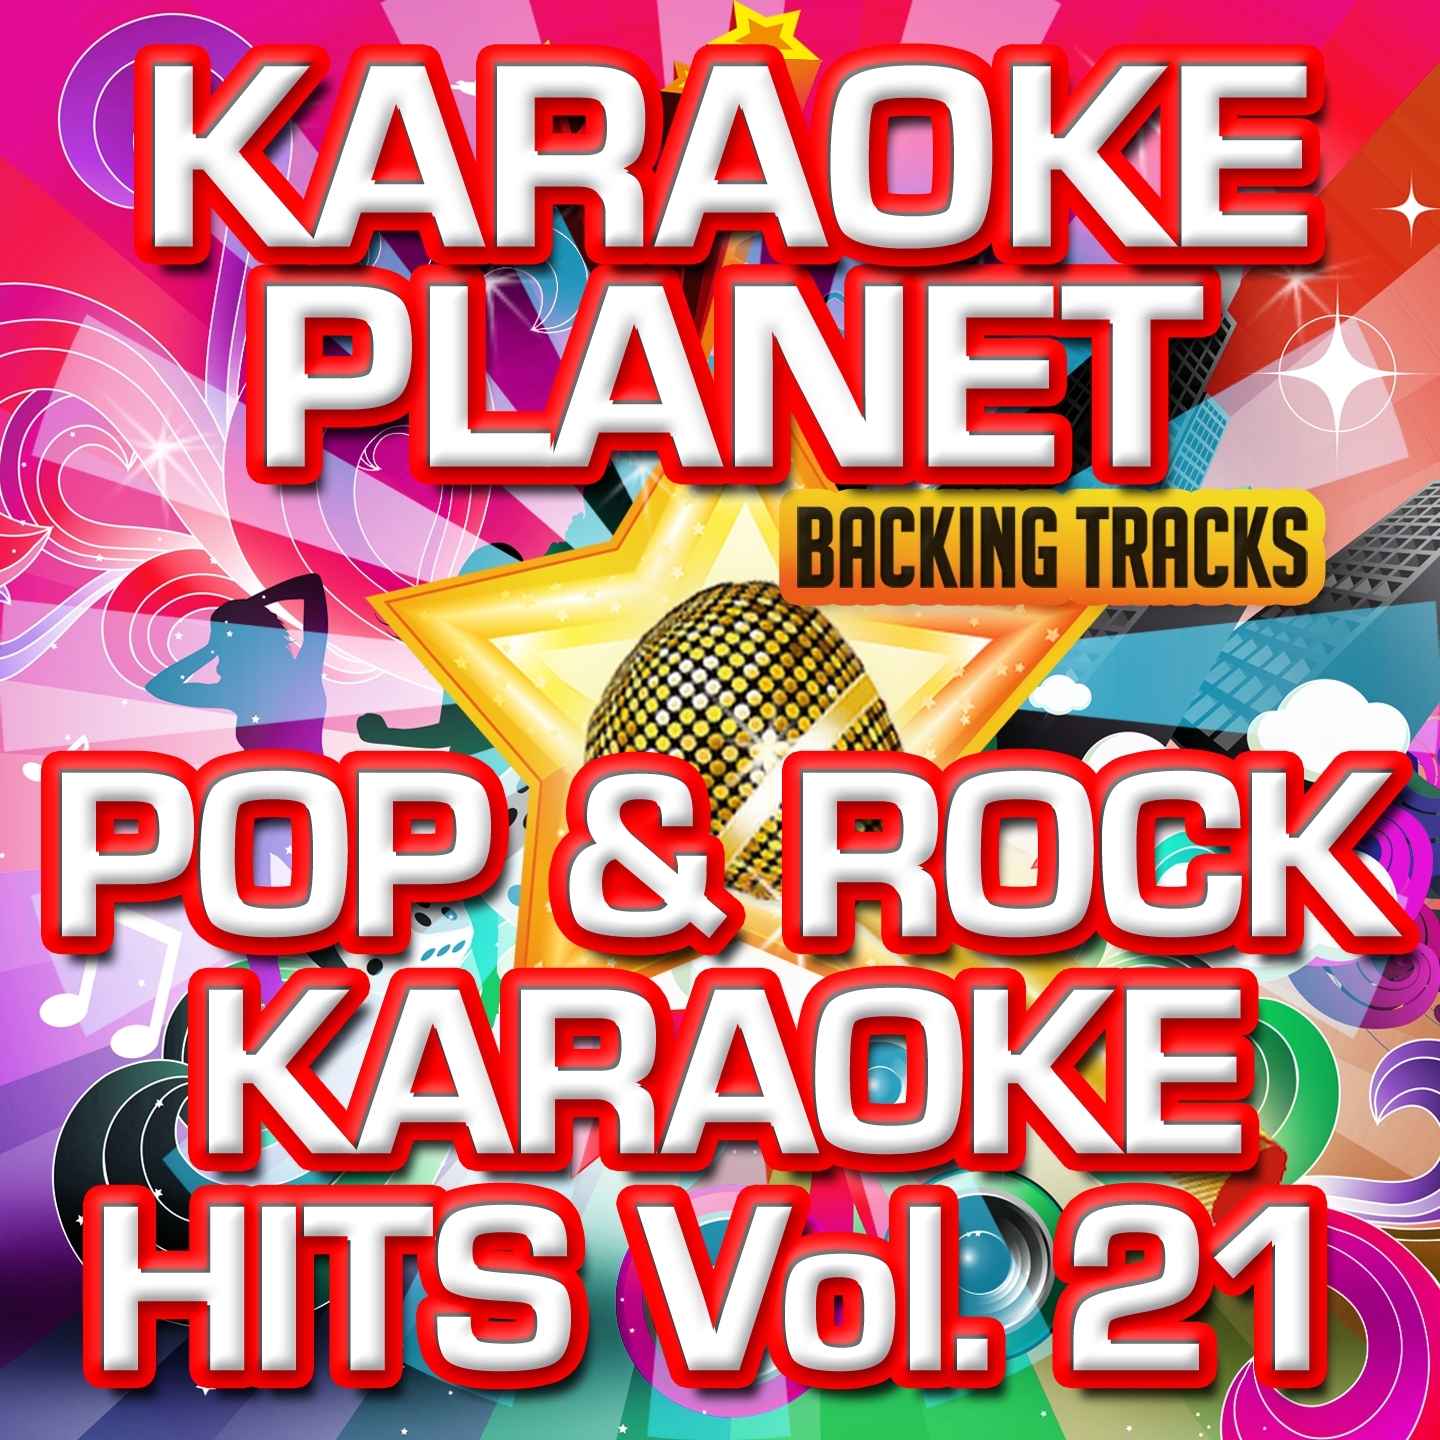 Pop & Rock Karaoke Hits, Vol. 21